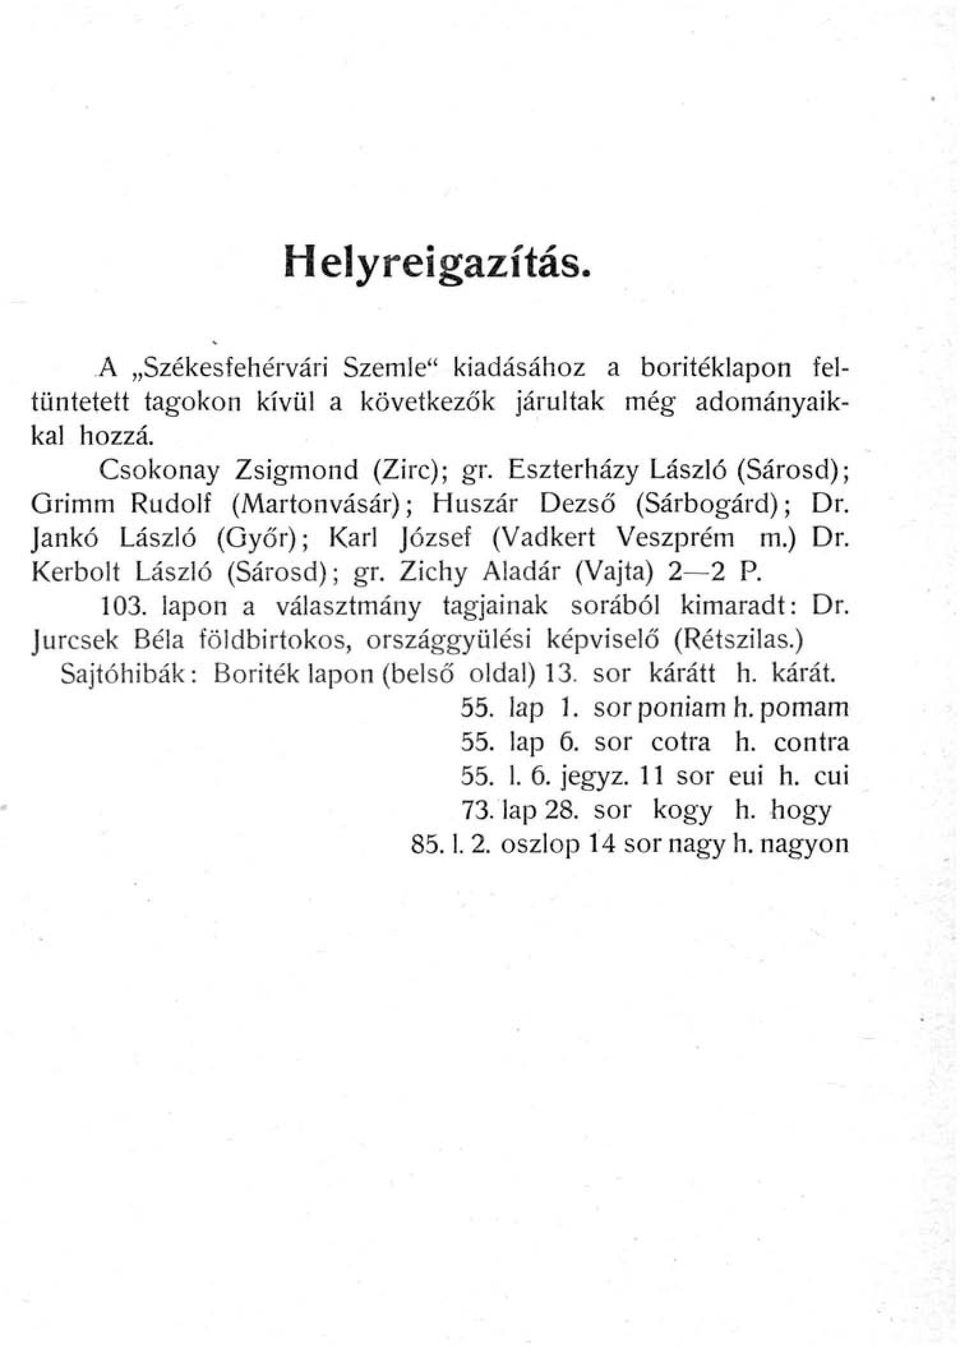 Zichy Aladár (Vájta) 2 2 P. 103. lapon a választmány tagjainak sorából kimaradt: Dr. Jurcsek Béla földbirtokos, országgyűlési képviselő (Rétszilas.